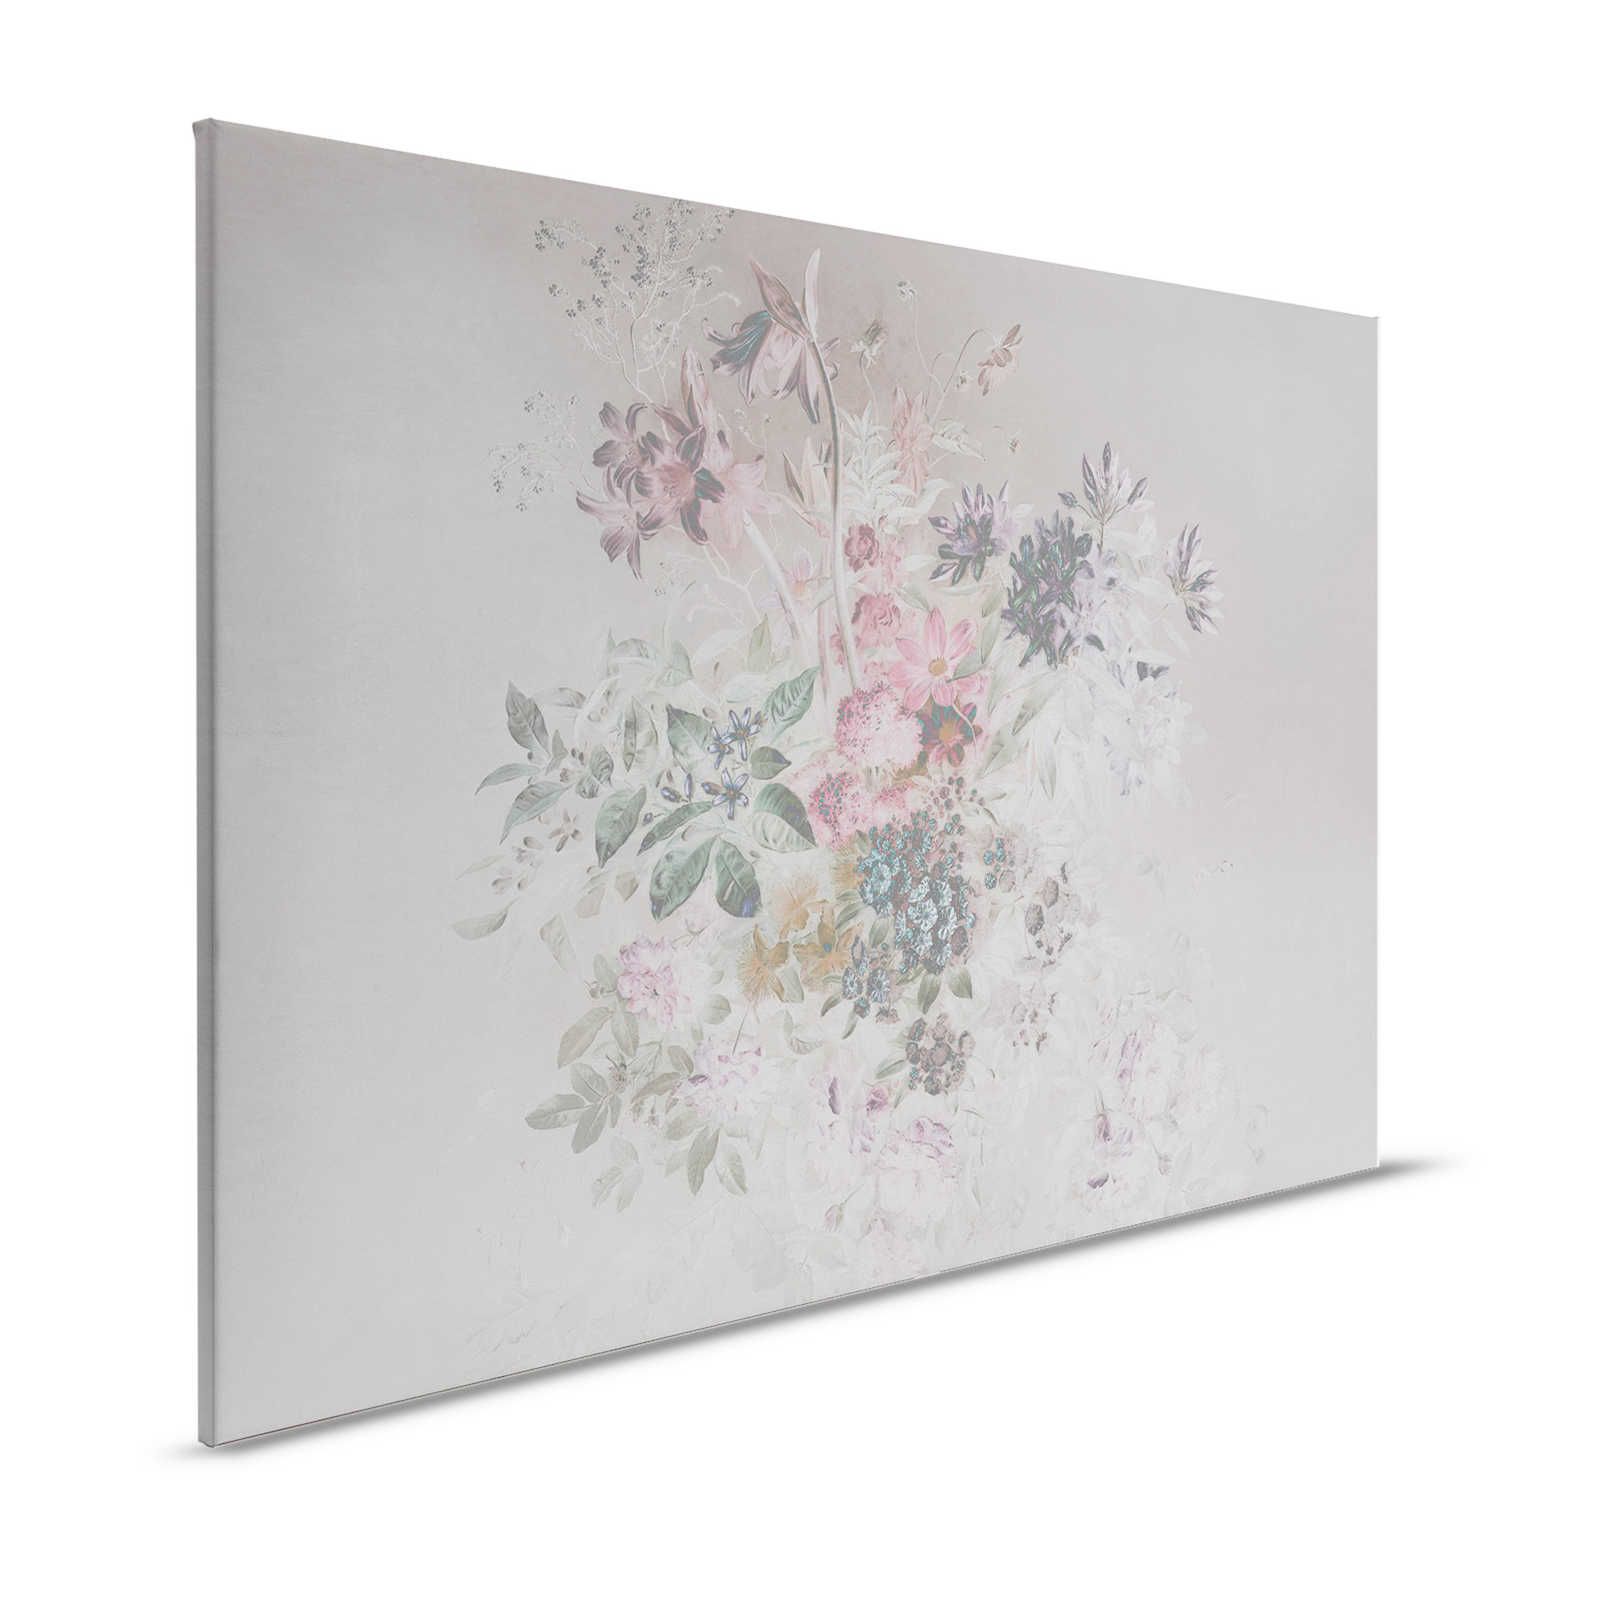 Fleurs sur toile avec design pastel - 0,90 m x 0,60 m
